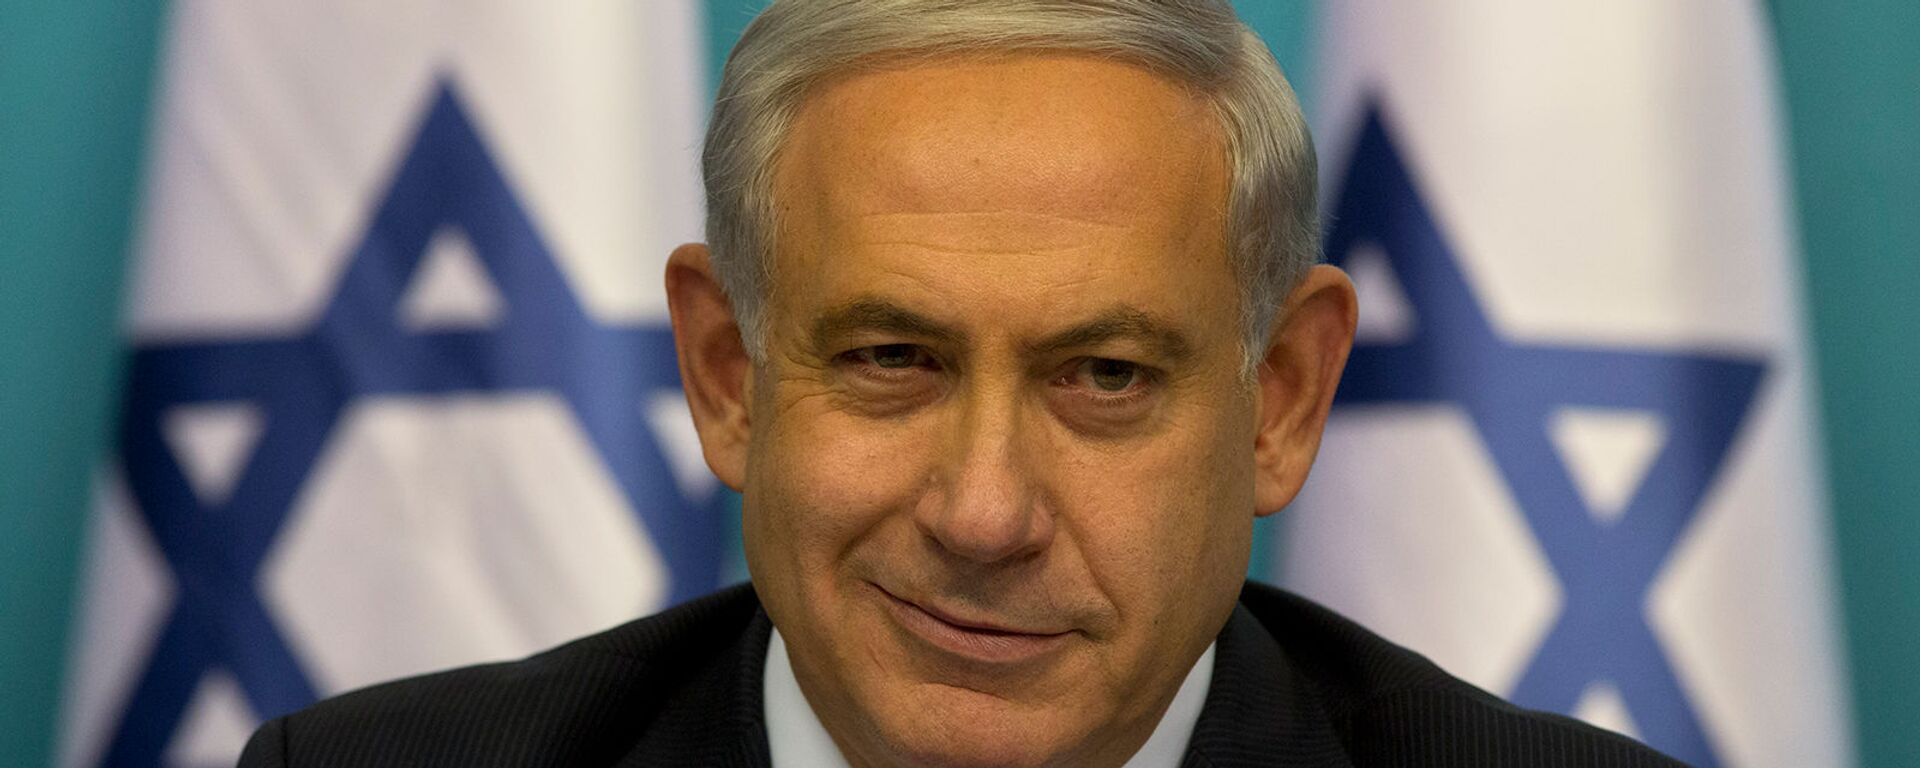 Премьер-министр Израиля Биньямин Нетаньяху во время пресс-конференции (27 августа 2014). Иерусалим - Sputnik Армения, 1920, 10.12.2021